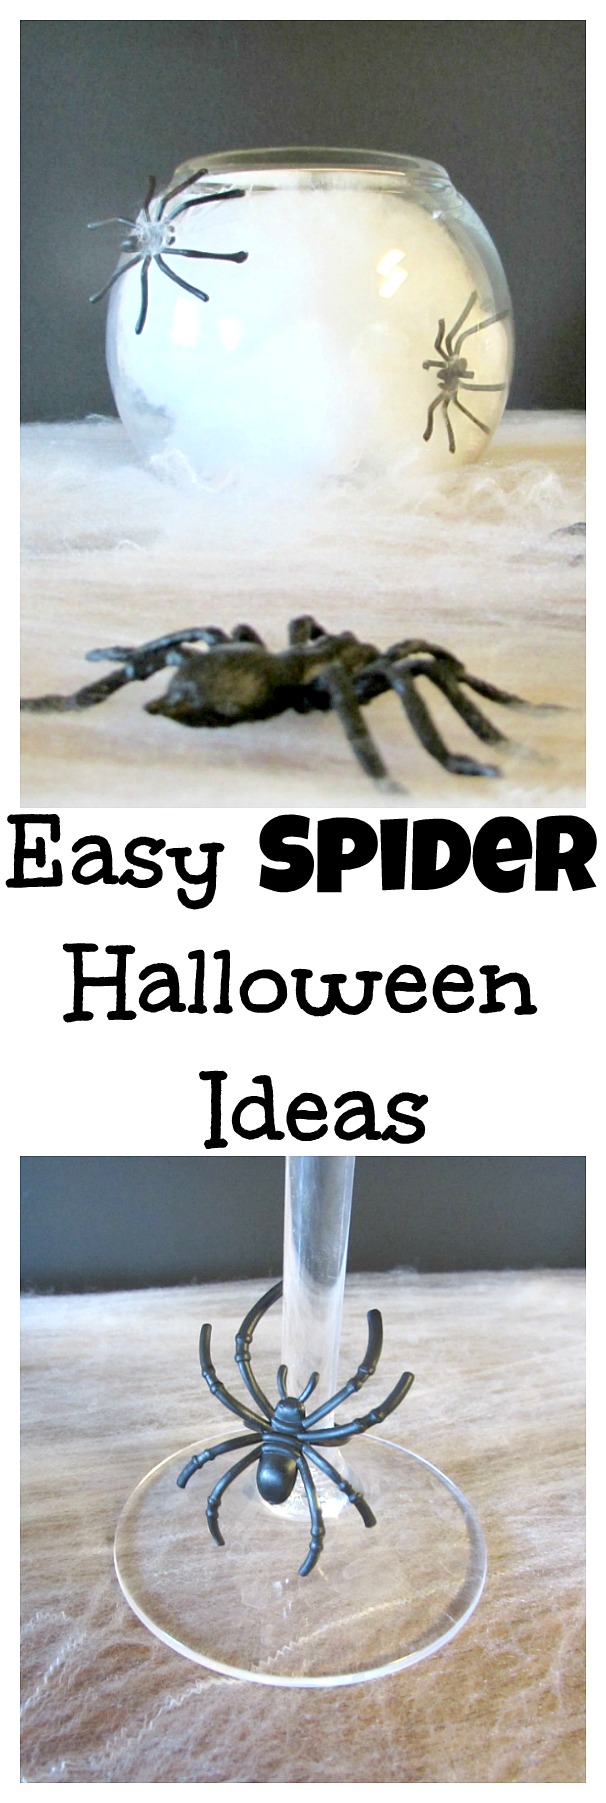 Easy spider Halloween ideas